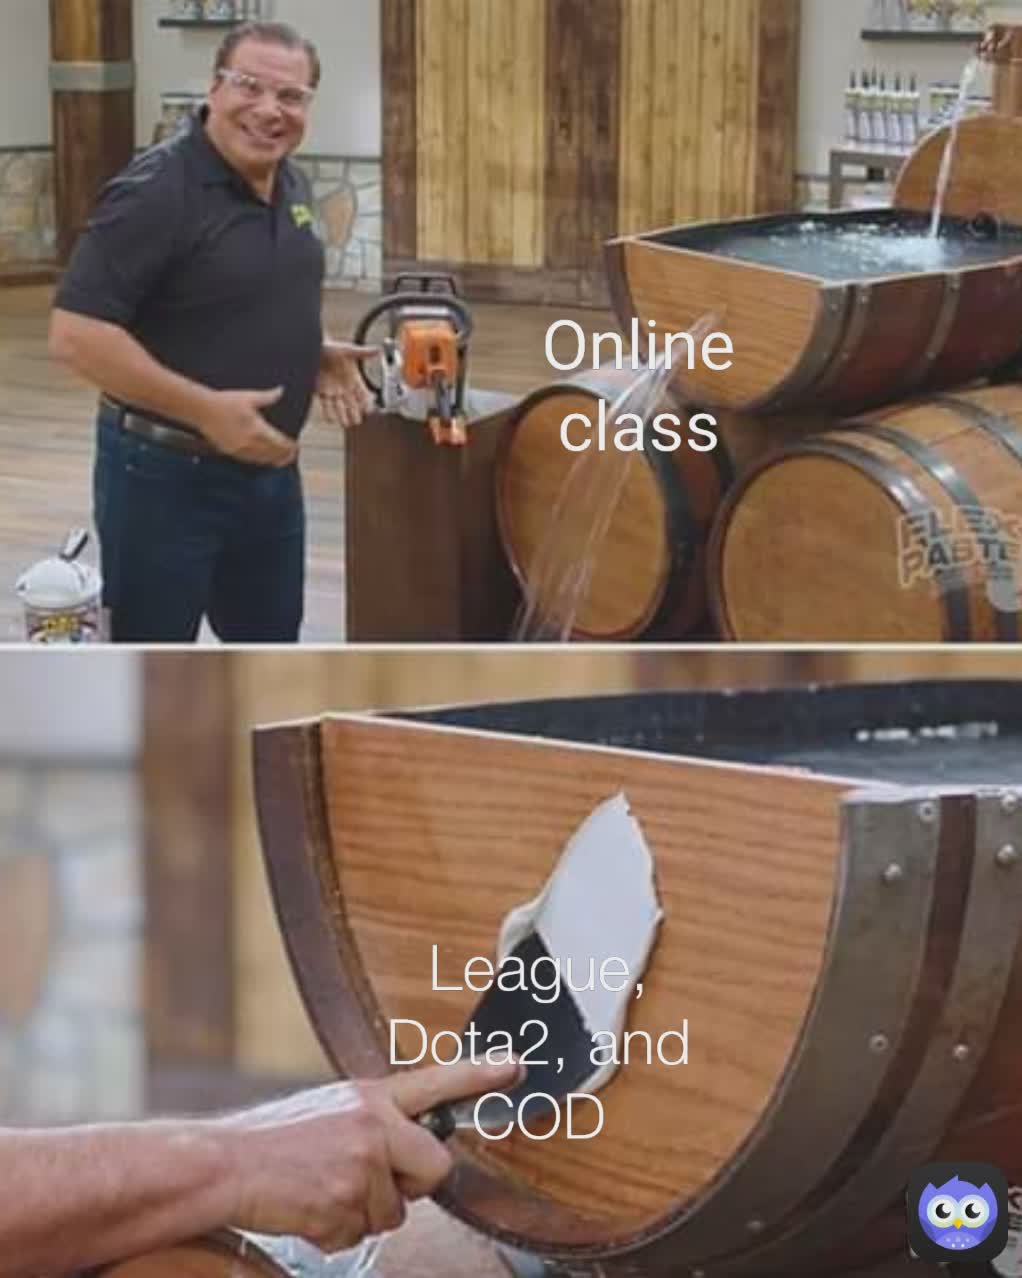 Online class League, Dota2, and COD Online class